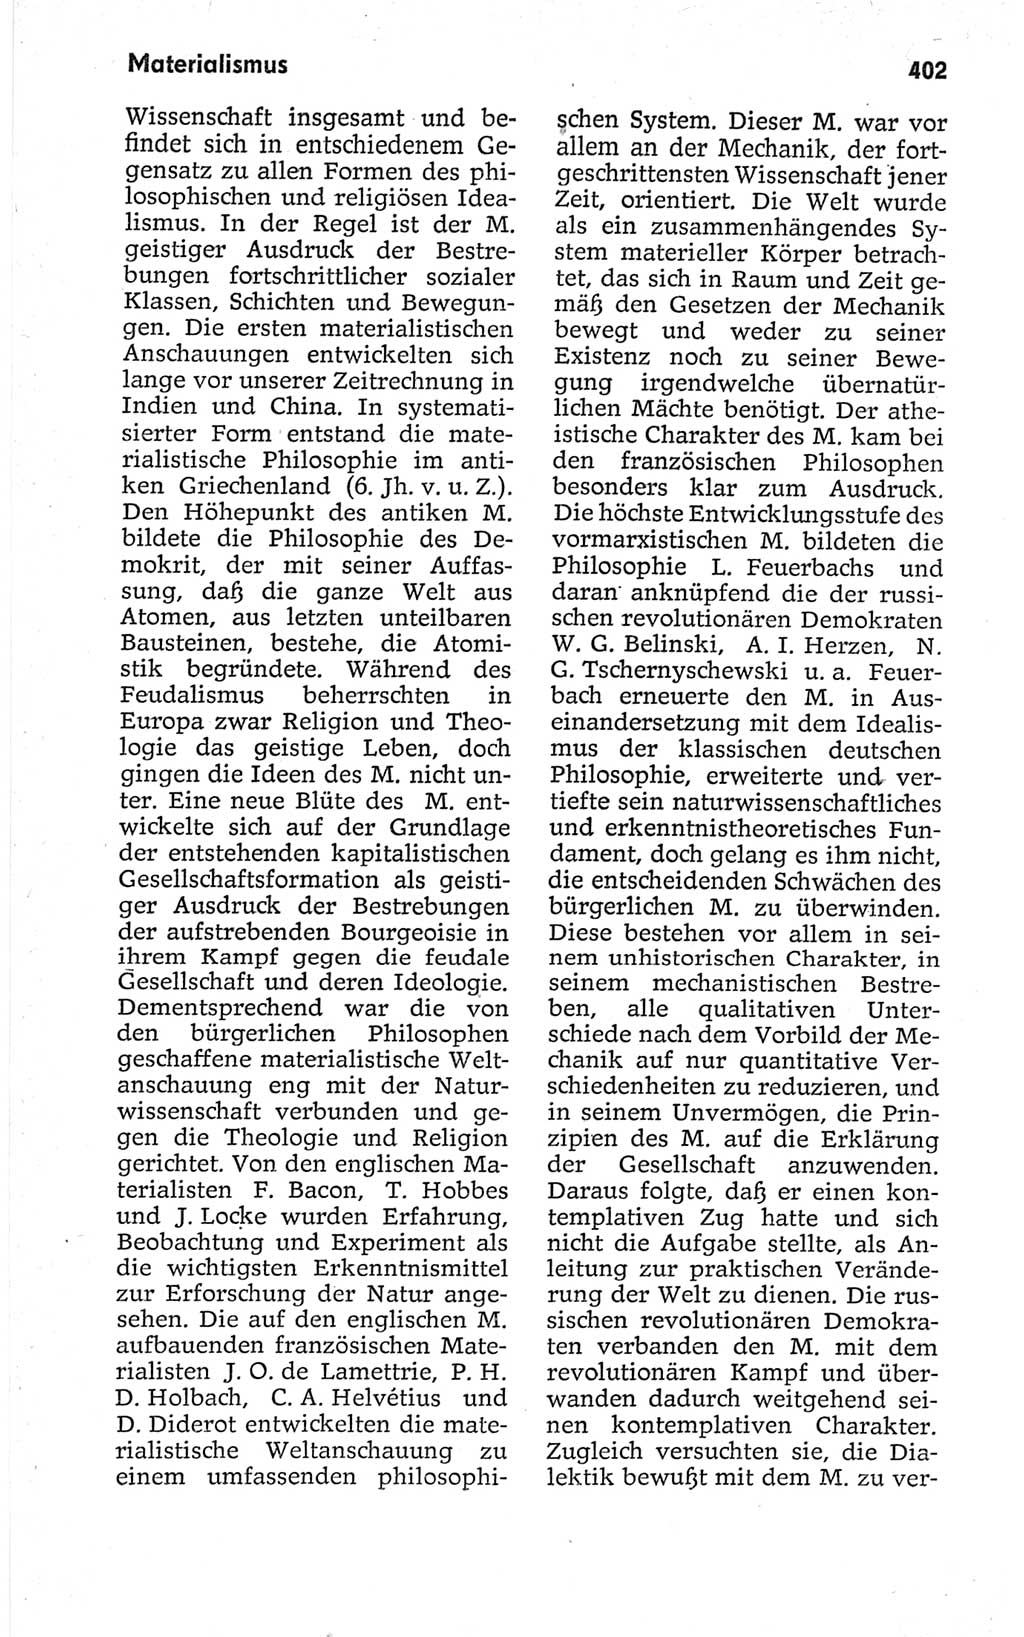 Kleines politisches Wörterbuch [Deutsche Demokratische Republik (DDR)] 1967, Seite 402 (Kl. pol. Wb. DDR 1967, S. 402)